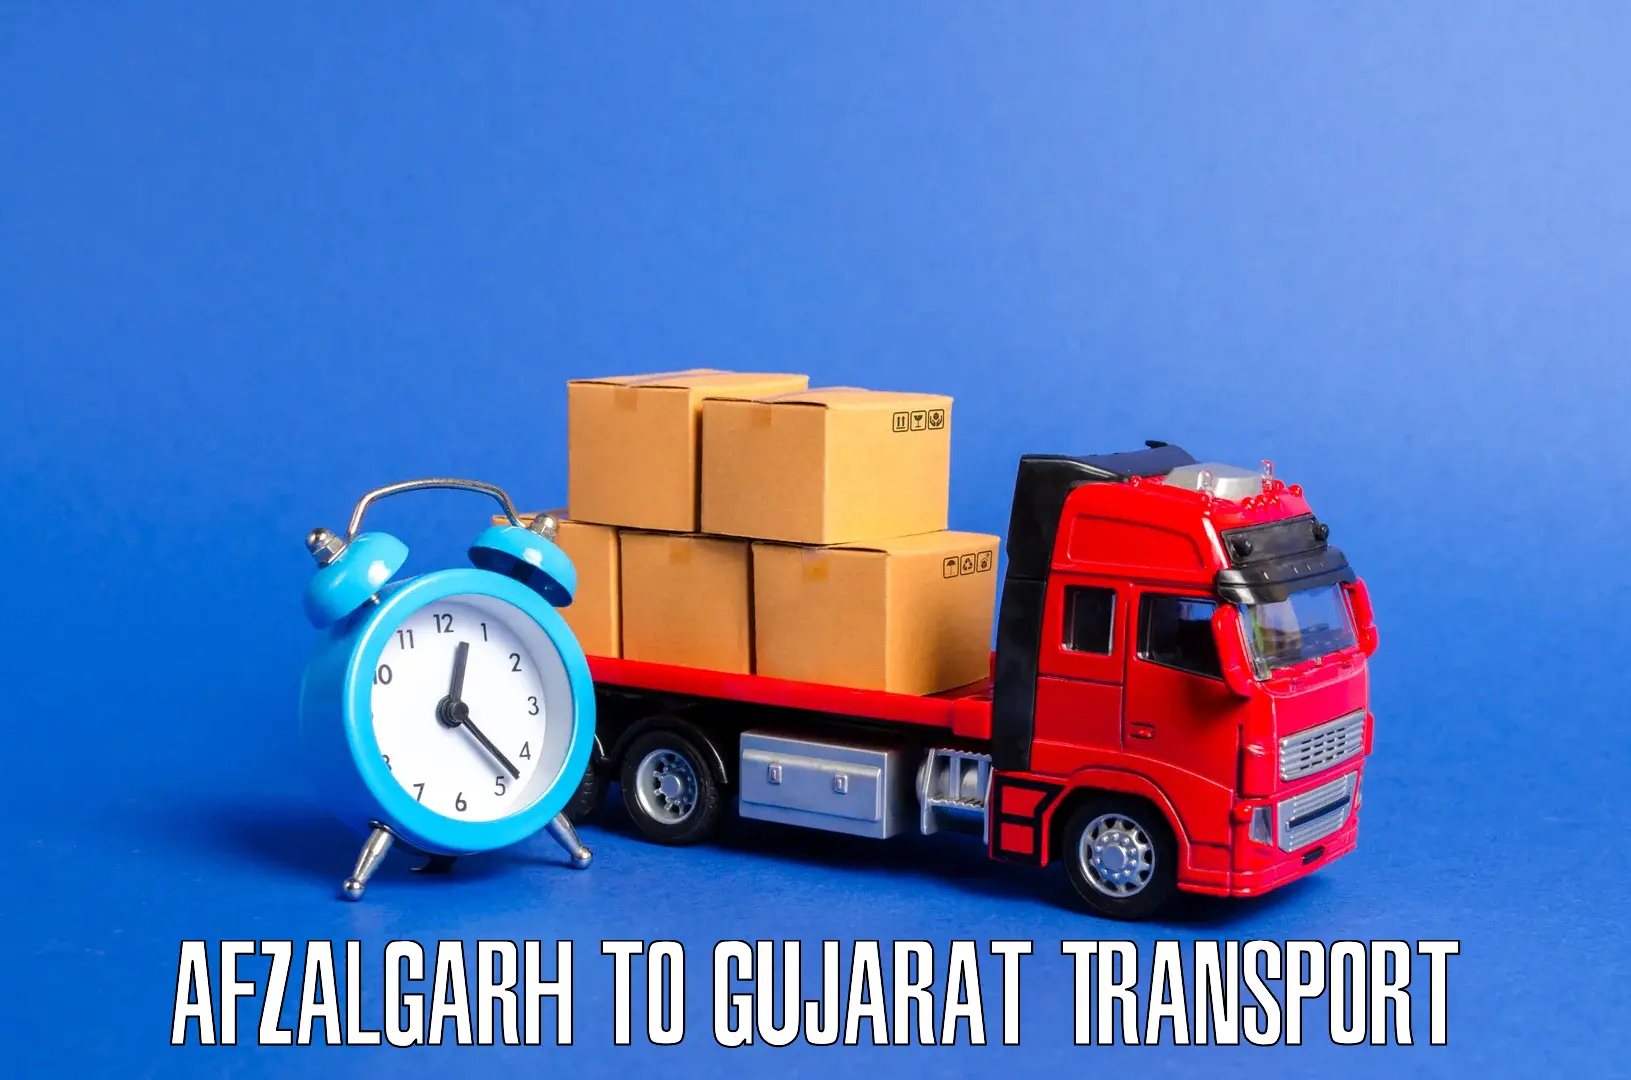 Container transport service Afzalgarh to Halvad